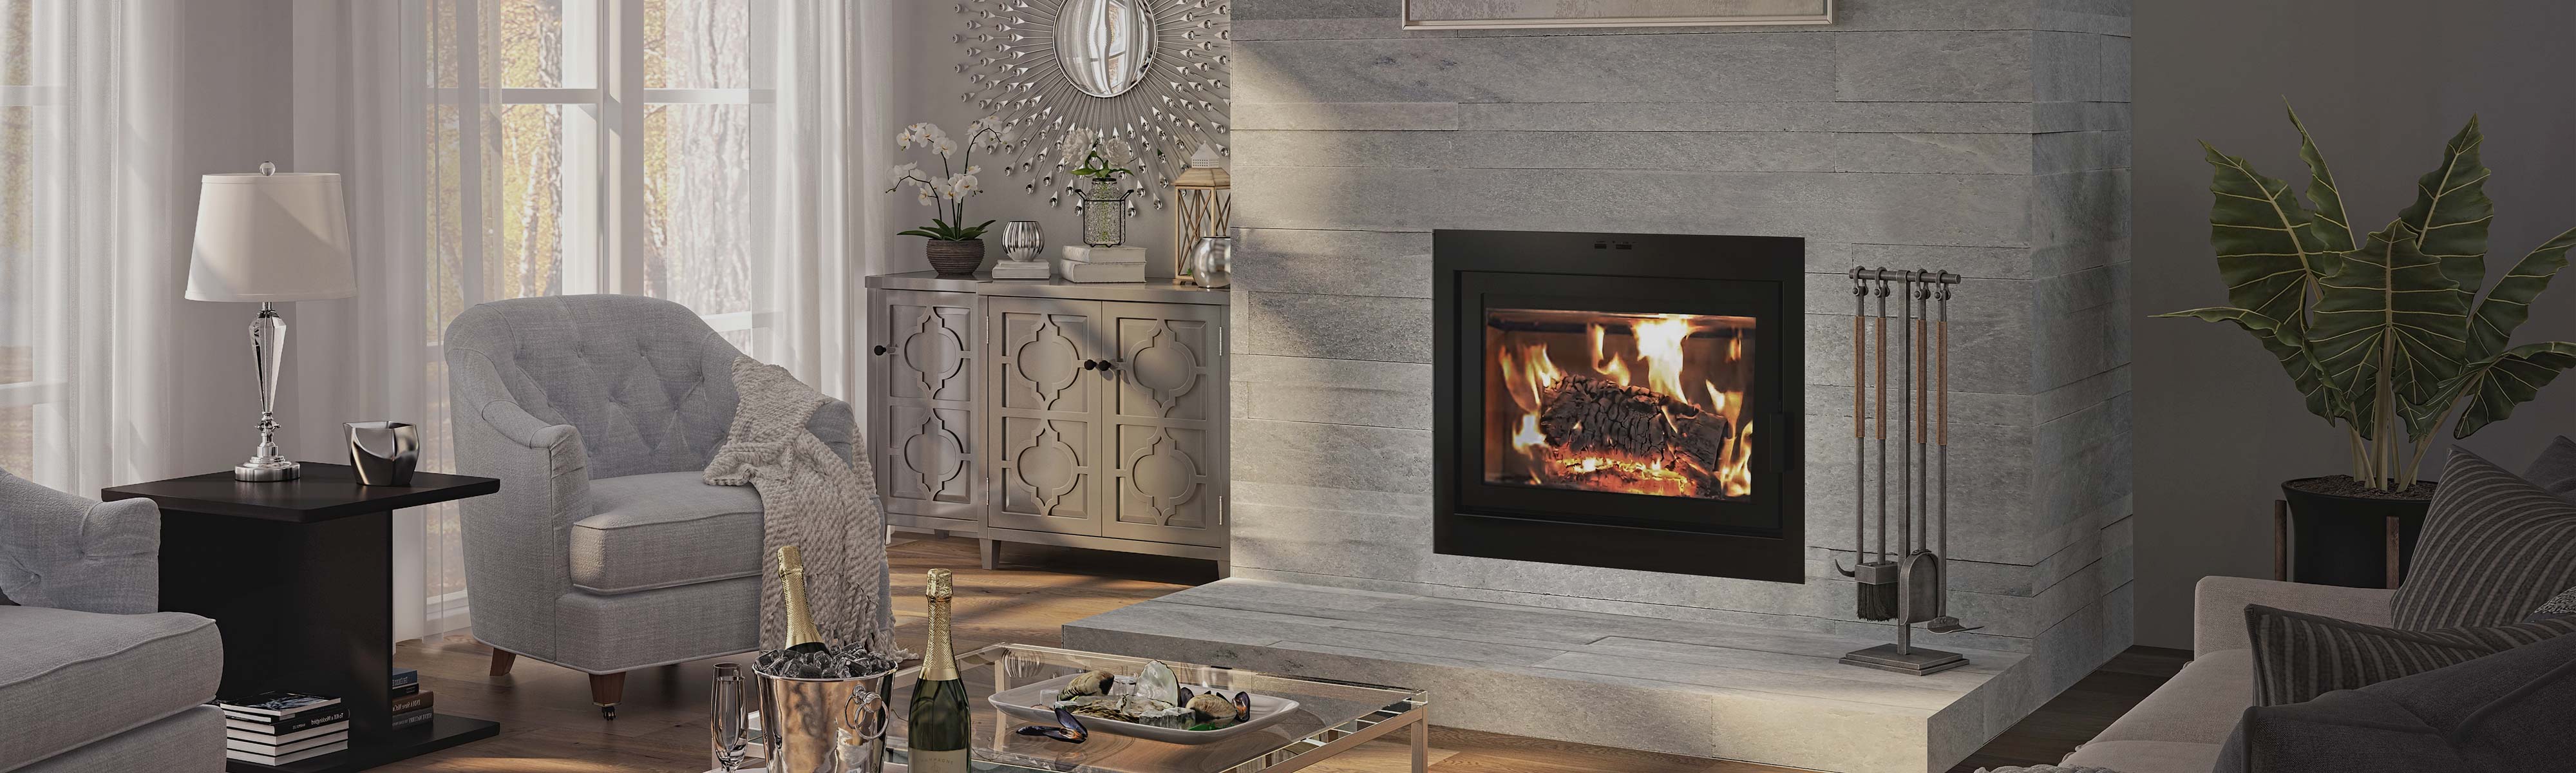 Wood fireplace photo